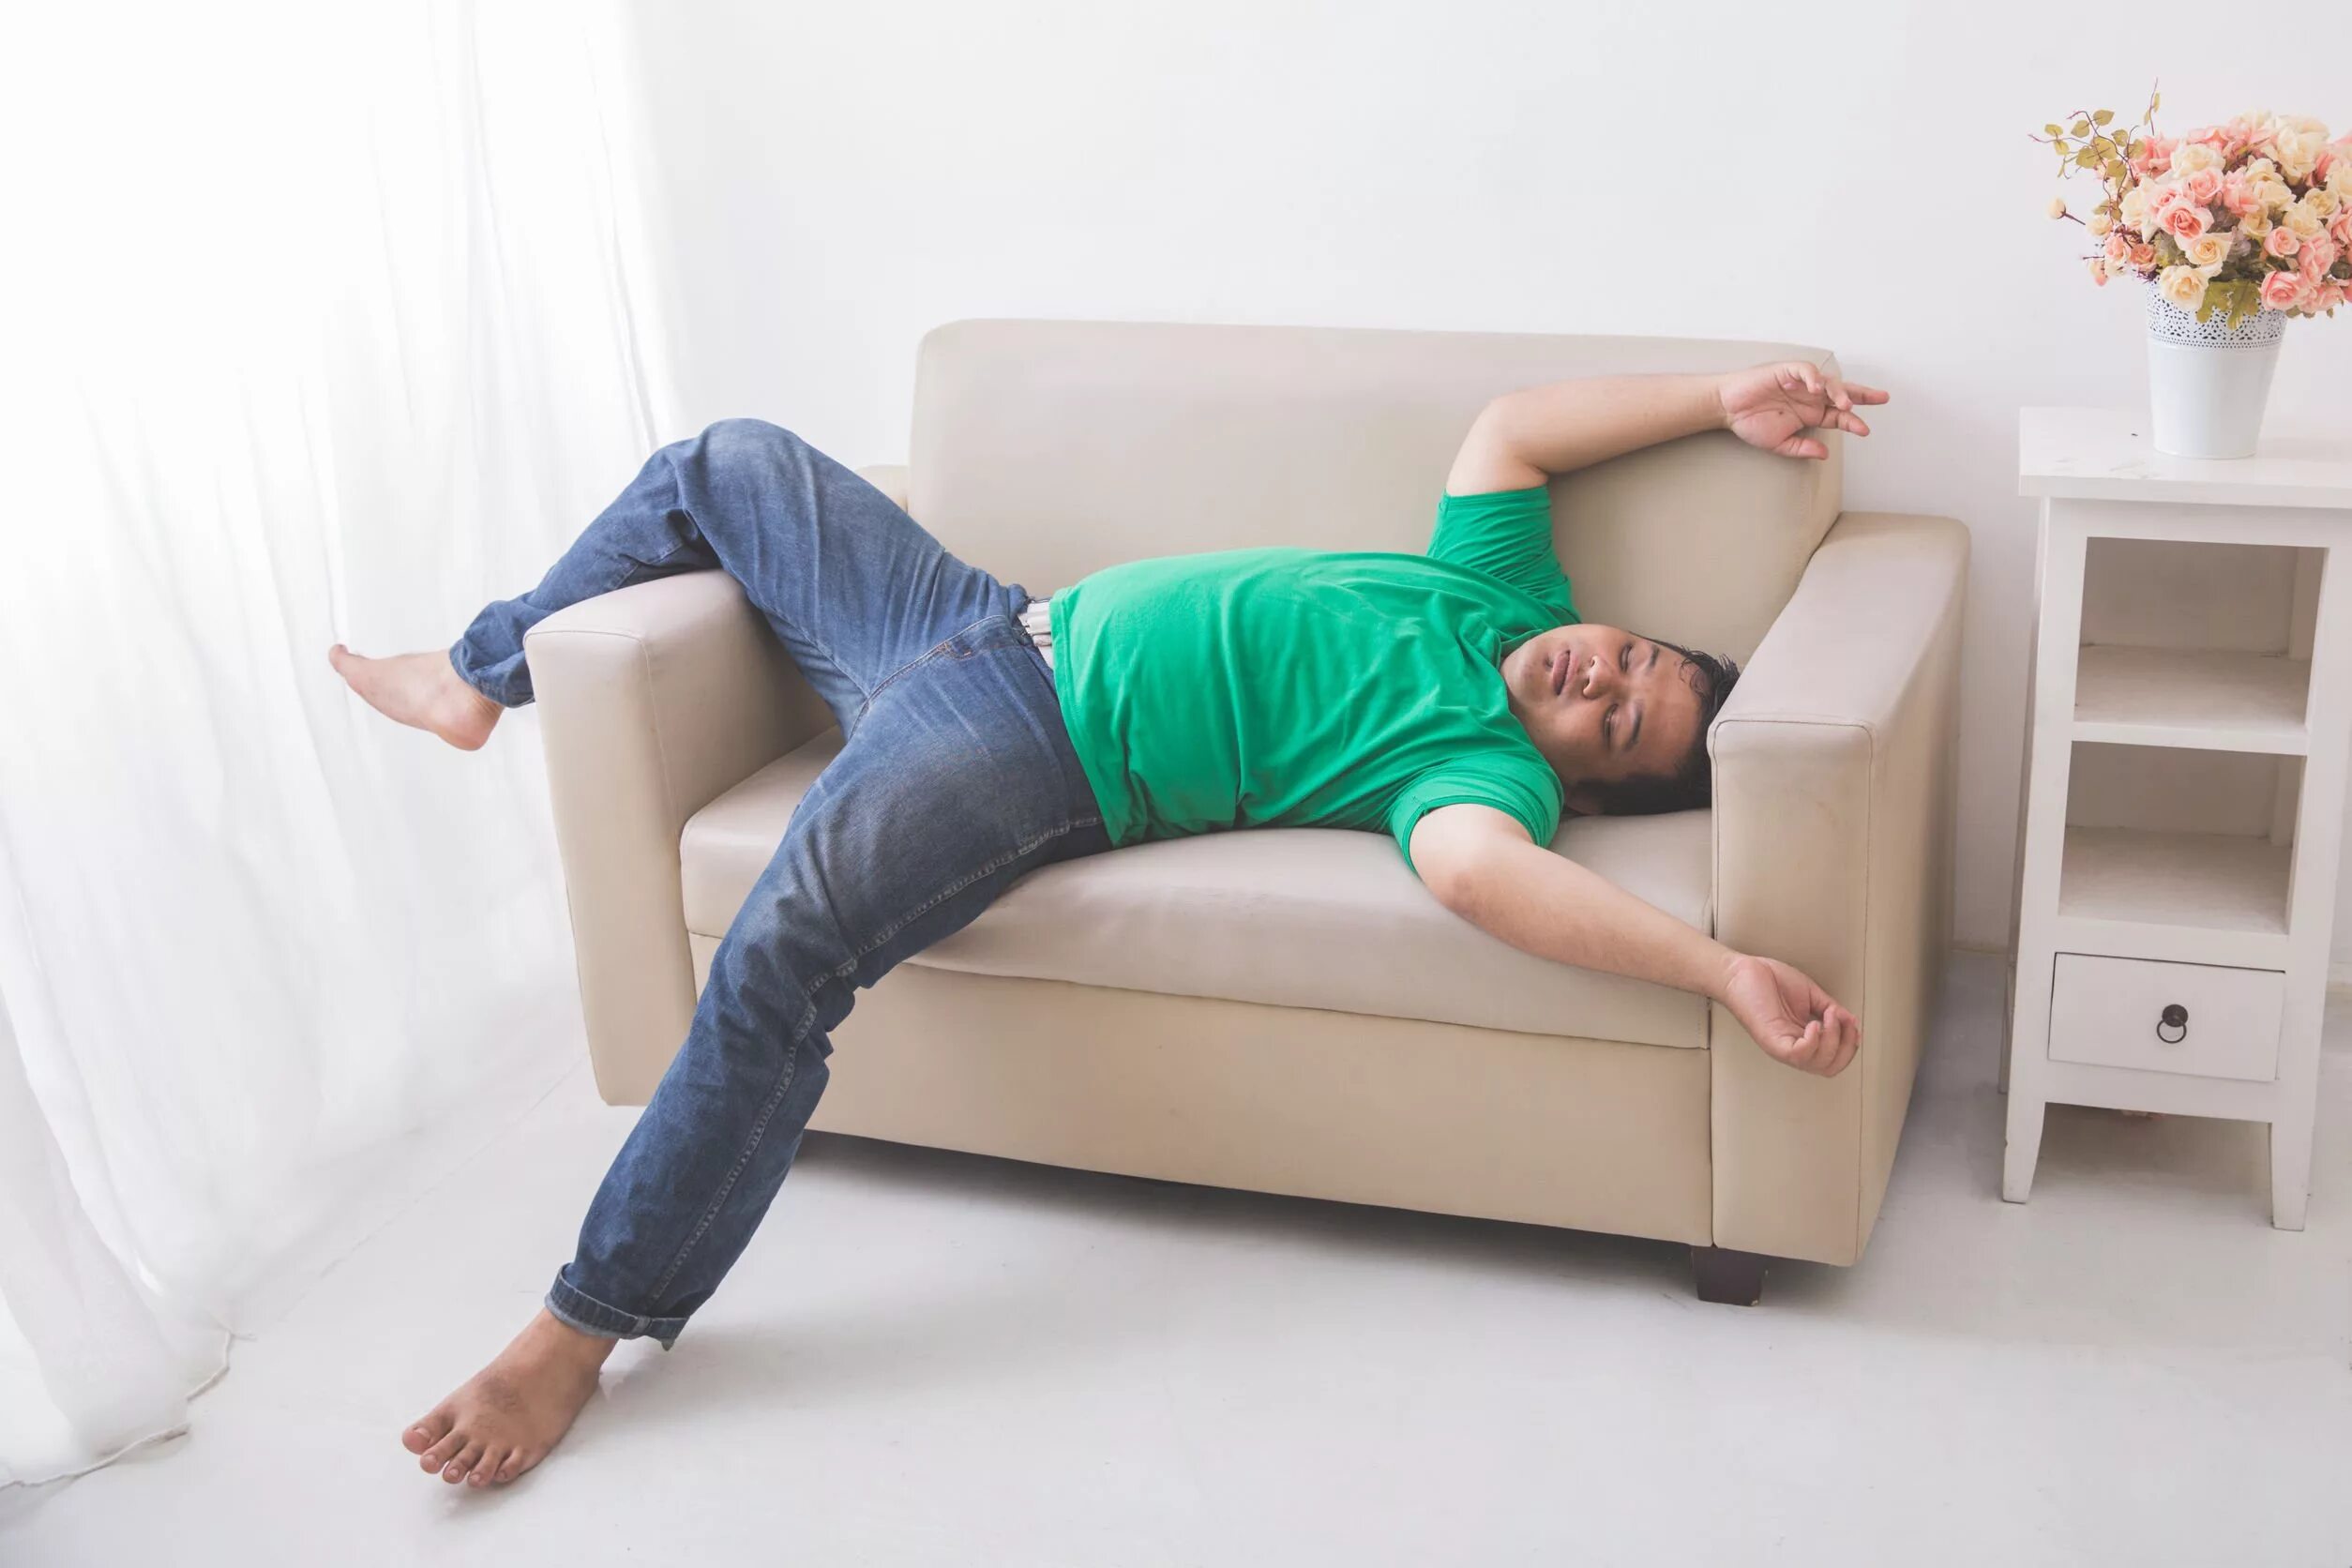 Спящий человек на диване. Человек лежит на диване. Уставший человек на диване. Сплю сидя что делать